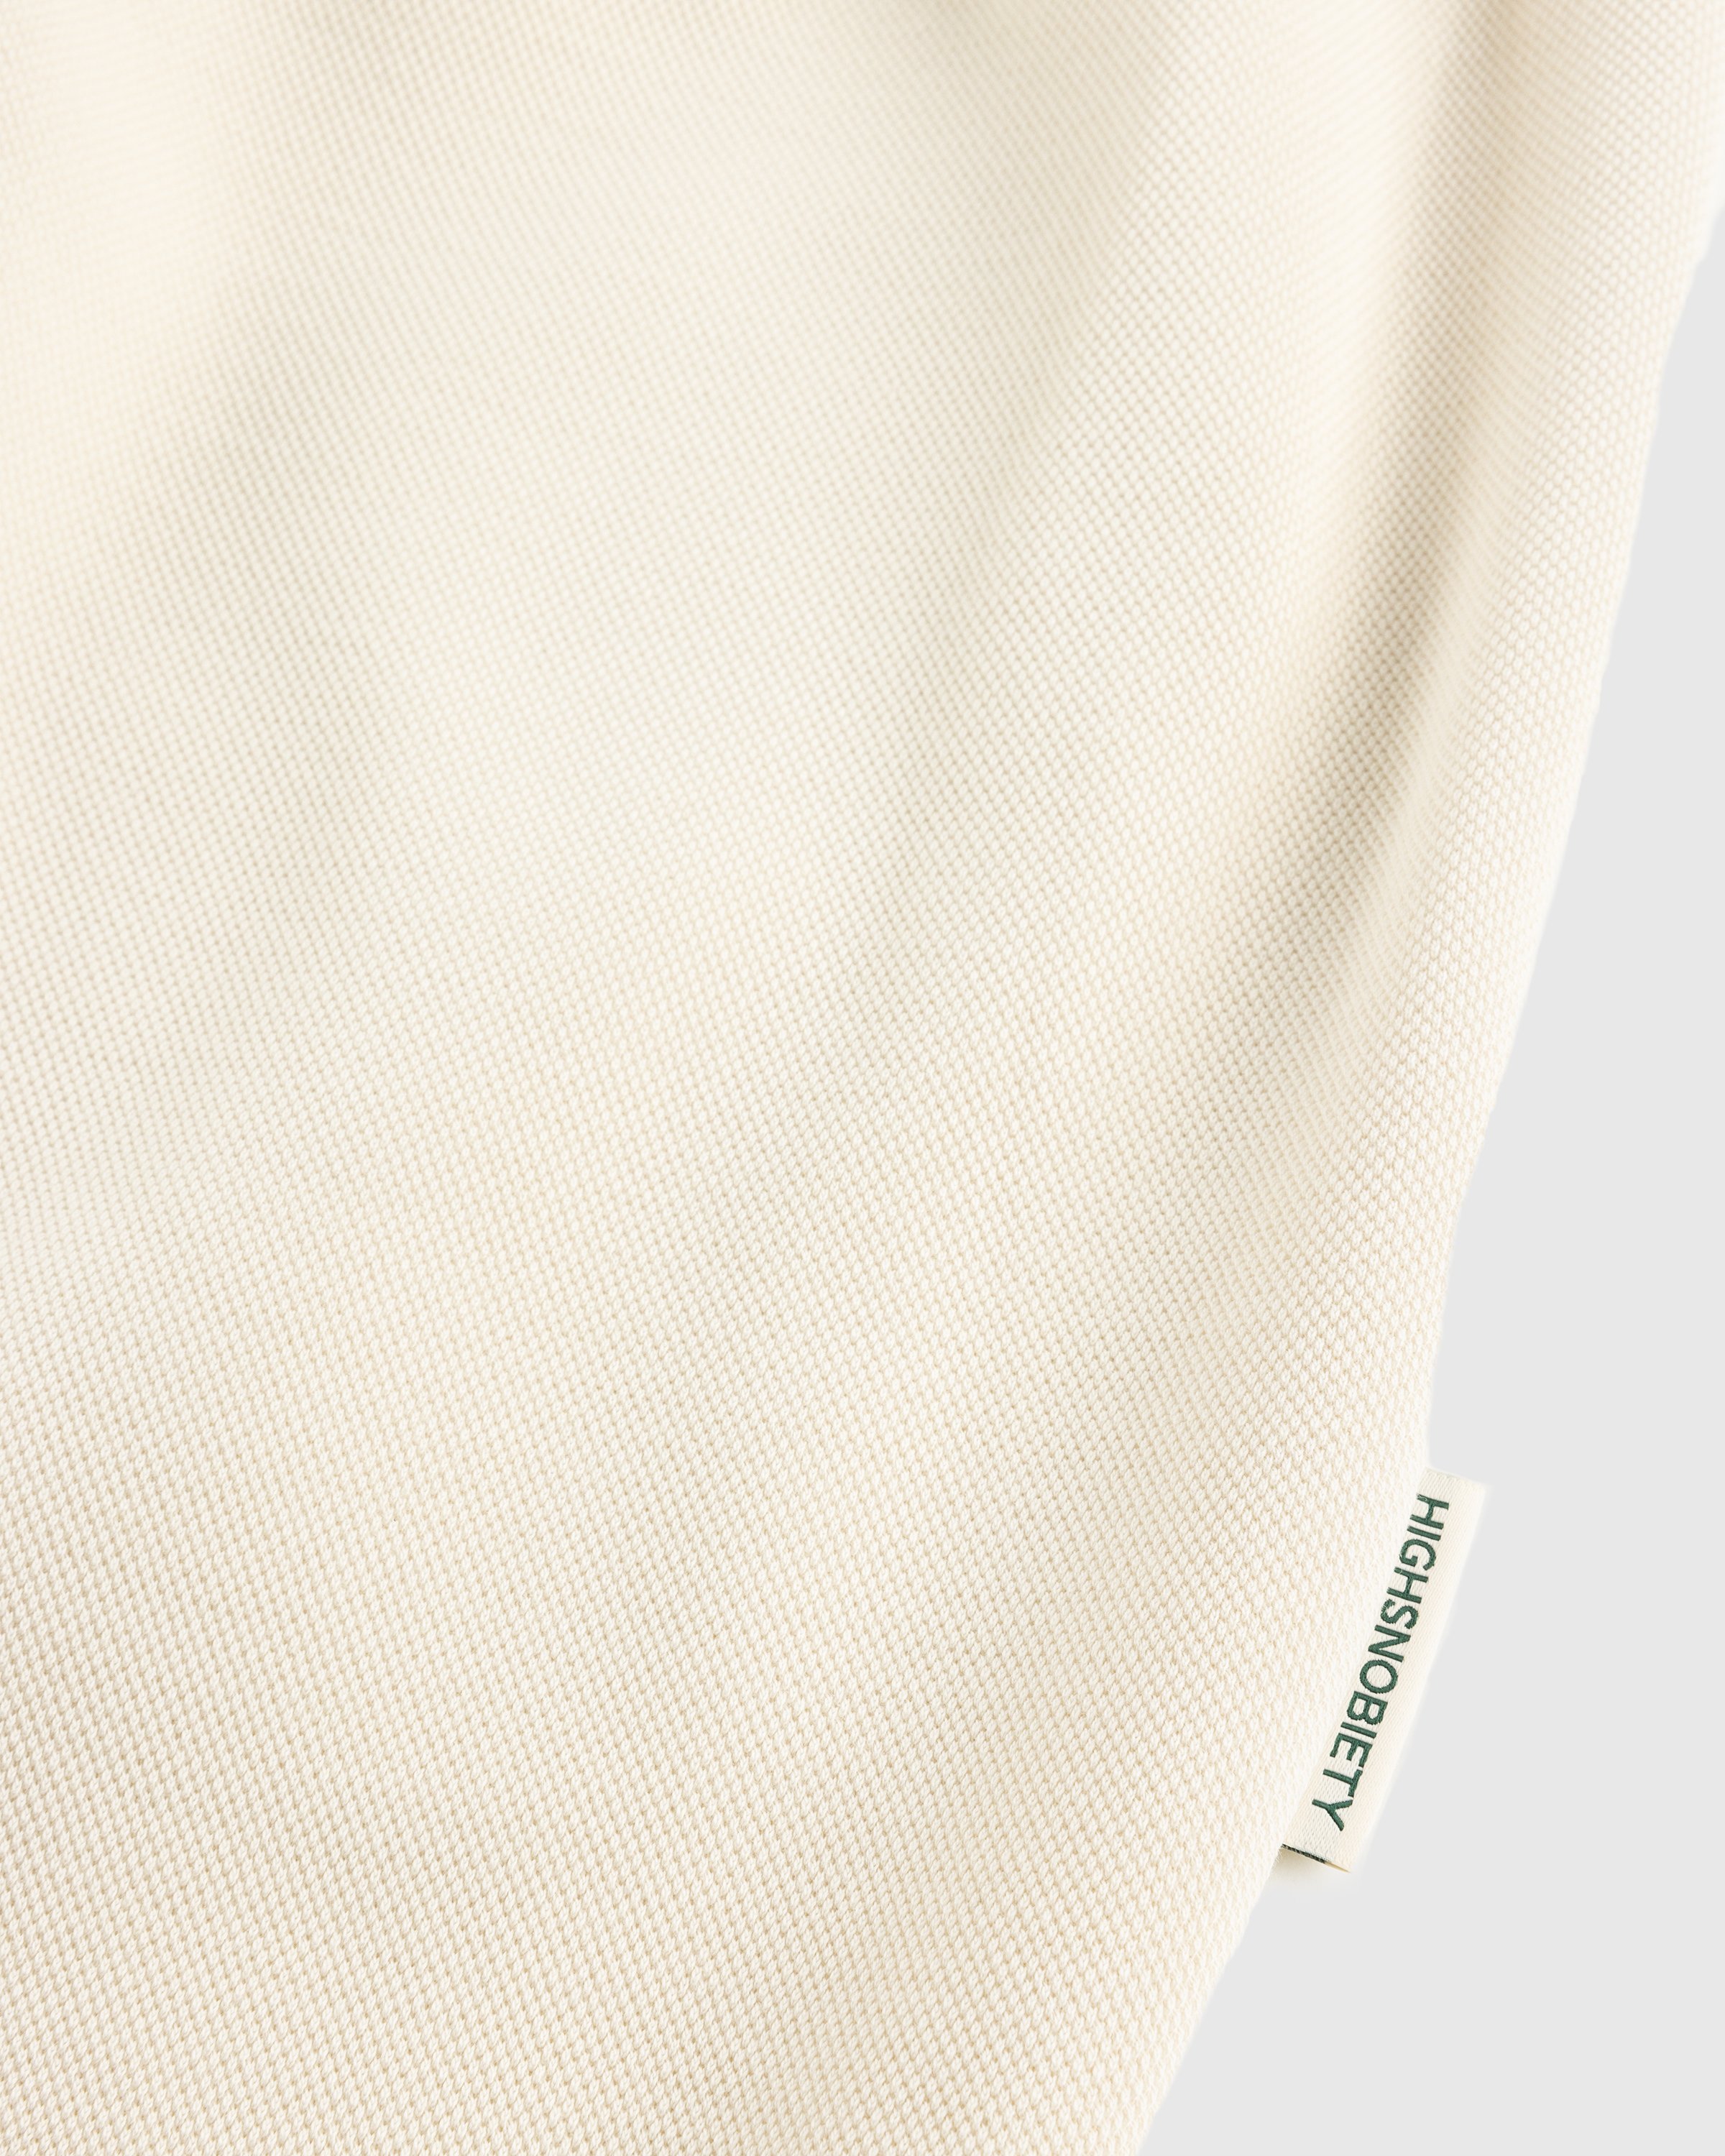 Lacoste x Highsnobiety - Eggshell Sweatpants - Clothing - Eggshell - Image 4